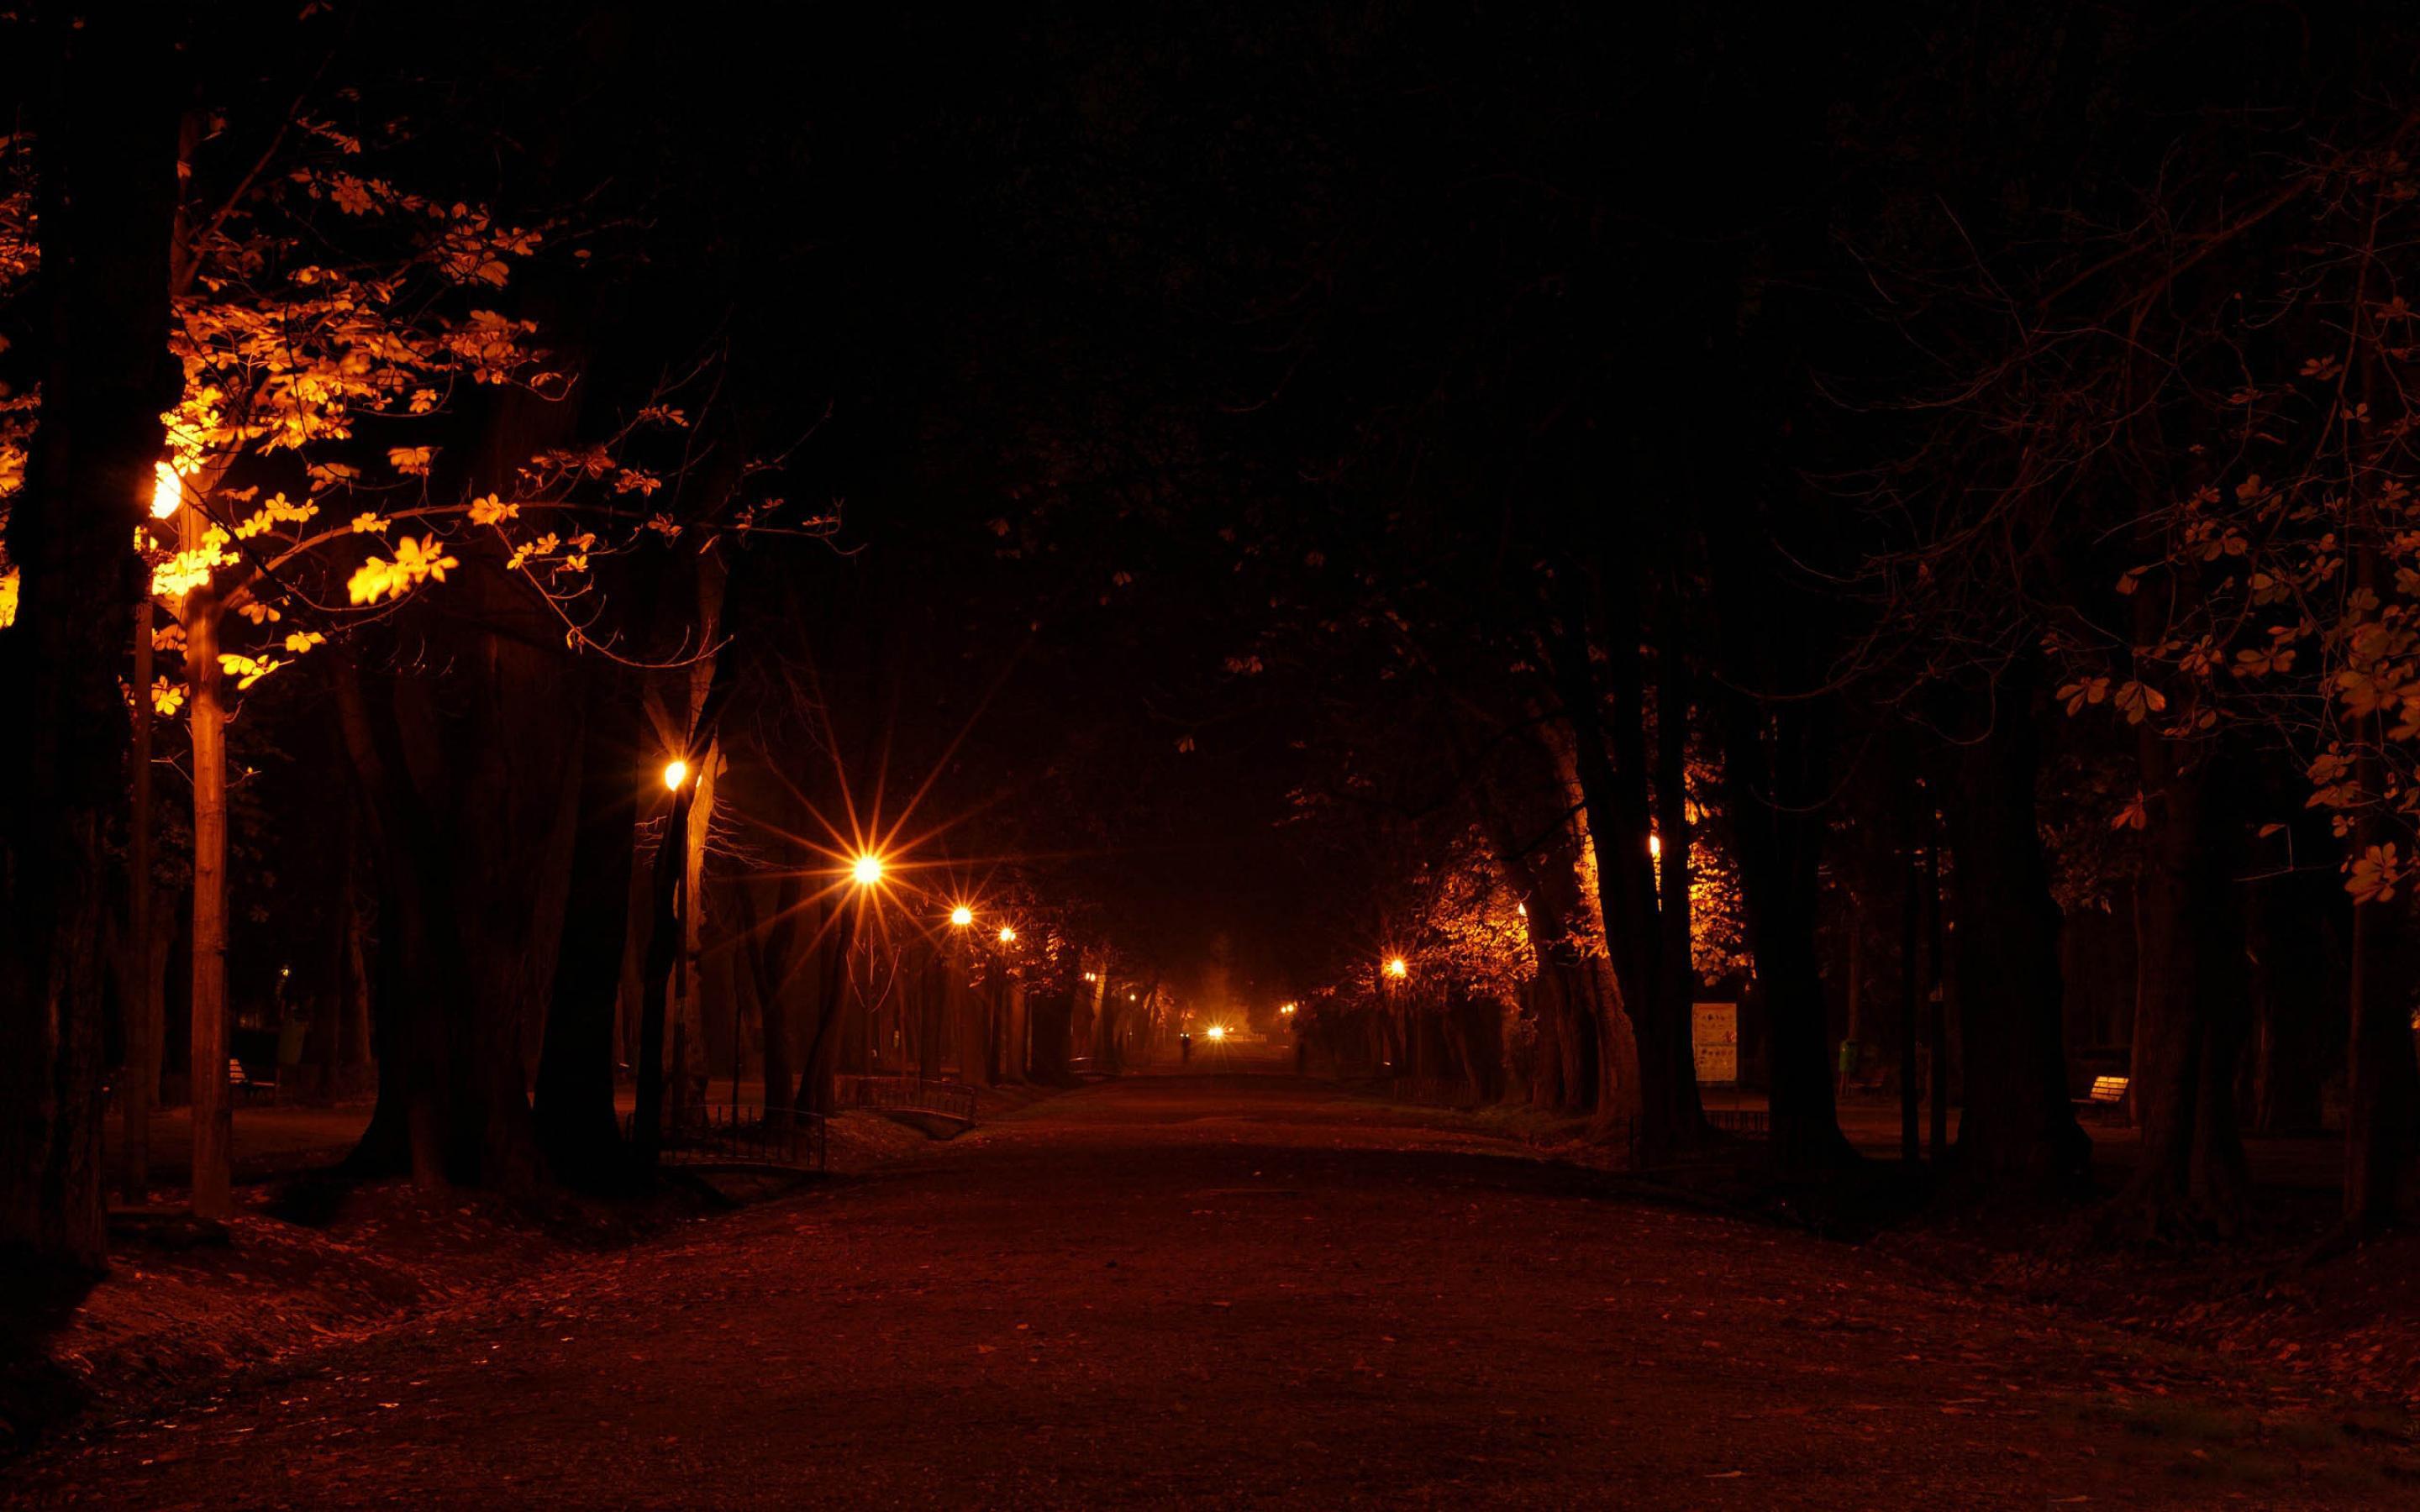 Вечер свет фонаря. Полюстровский парк ночью. Миусский парк ночью. Ночная улица. Ночная аллея с фонарями.